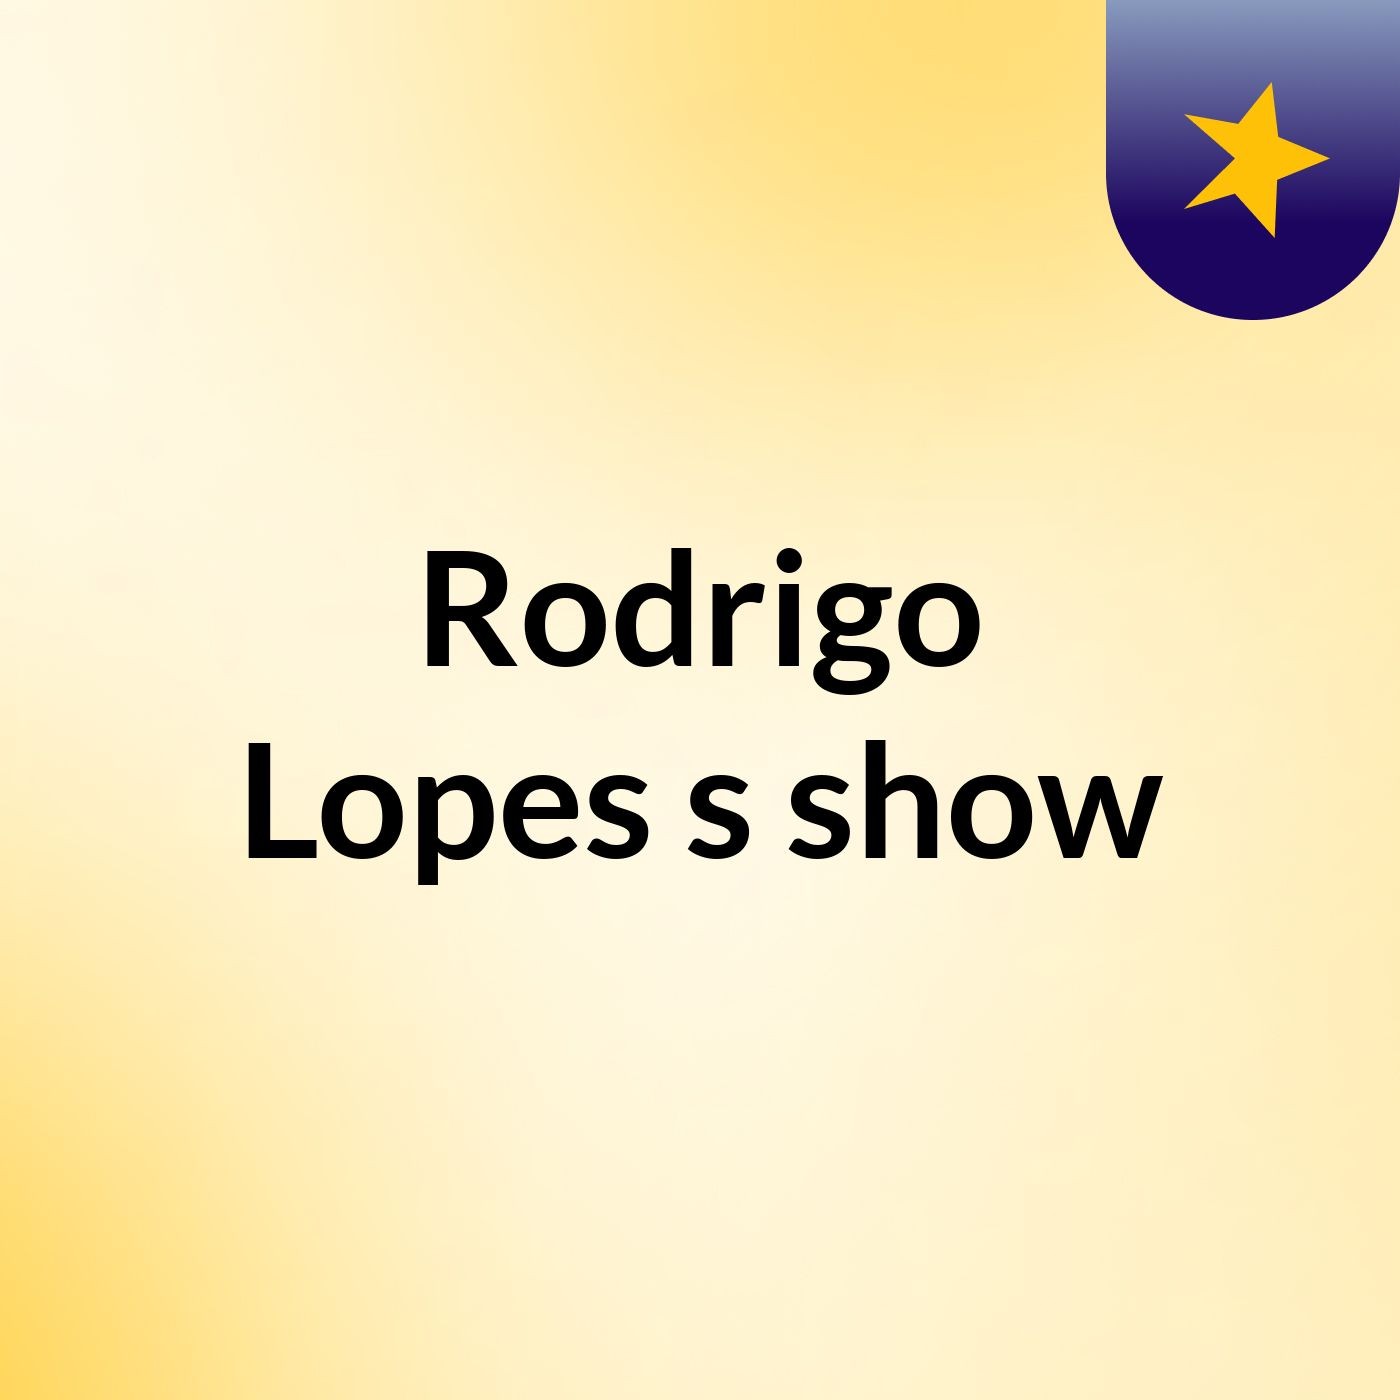 Rodrigo Lopes's show